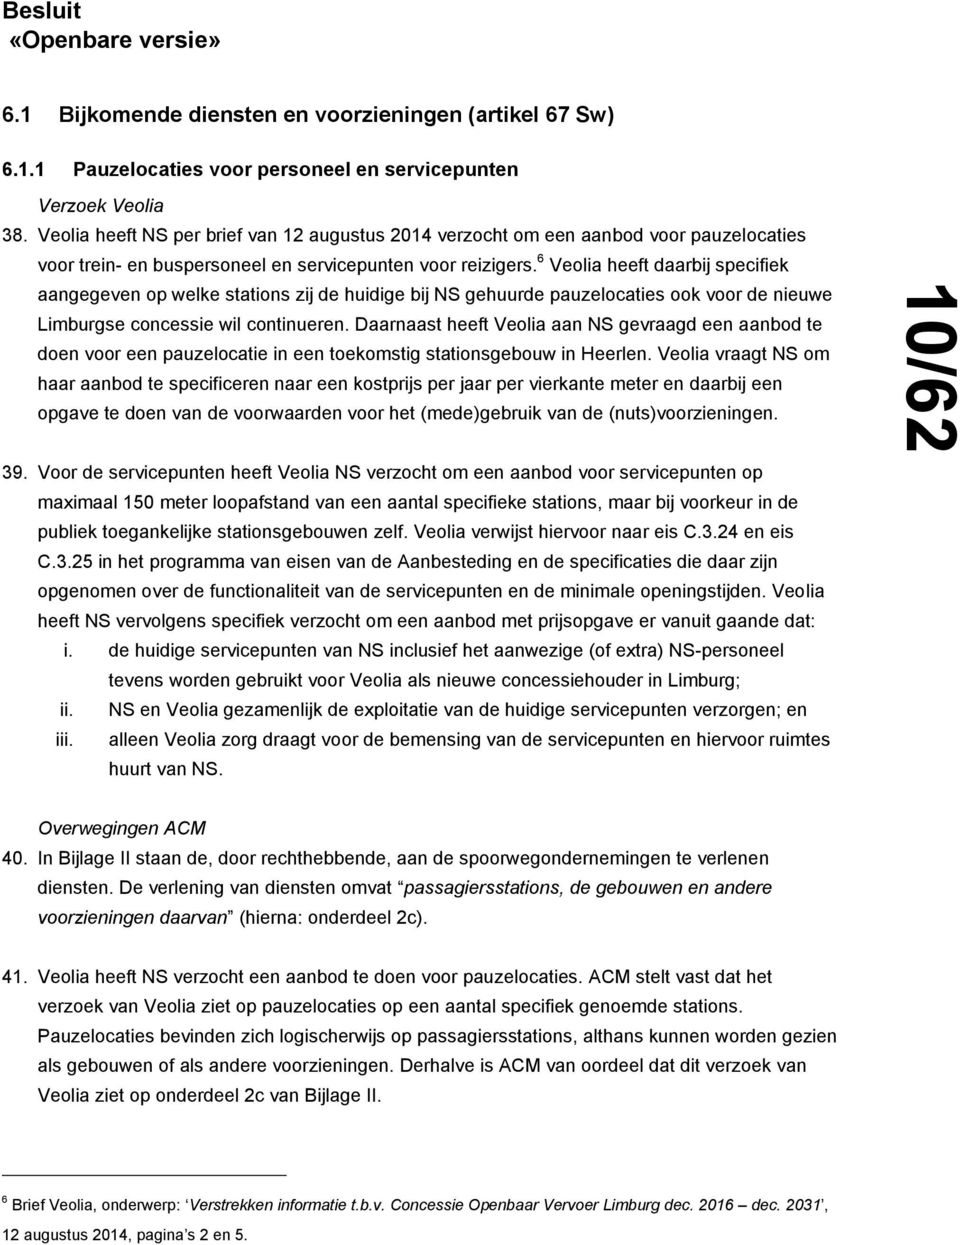 6 Veolia heeft daarbij specifiek aangegeven op welke stations zij de huidige bij NS gehuurde pauzelocaties ook voor de nieuwe Limburgse concessie wil continueren.